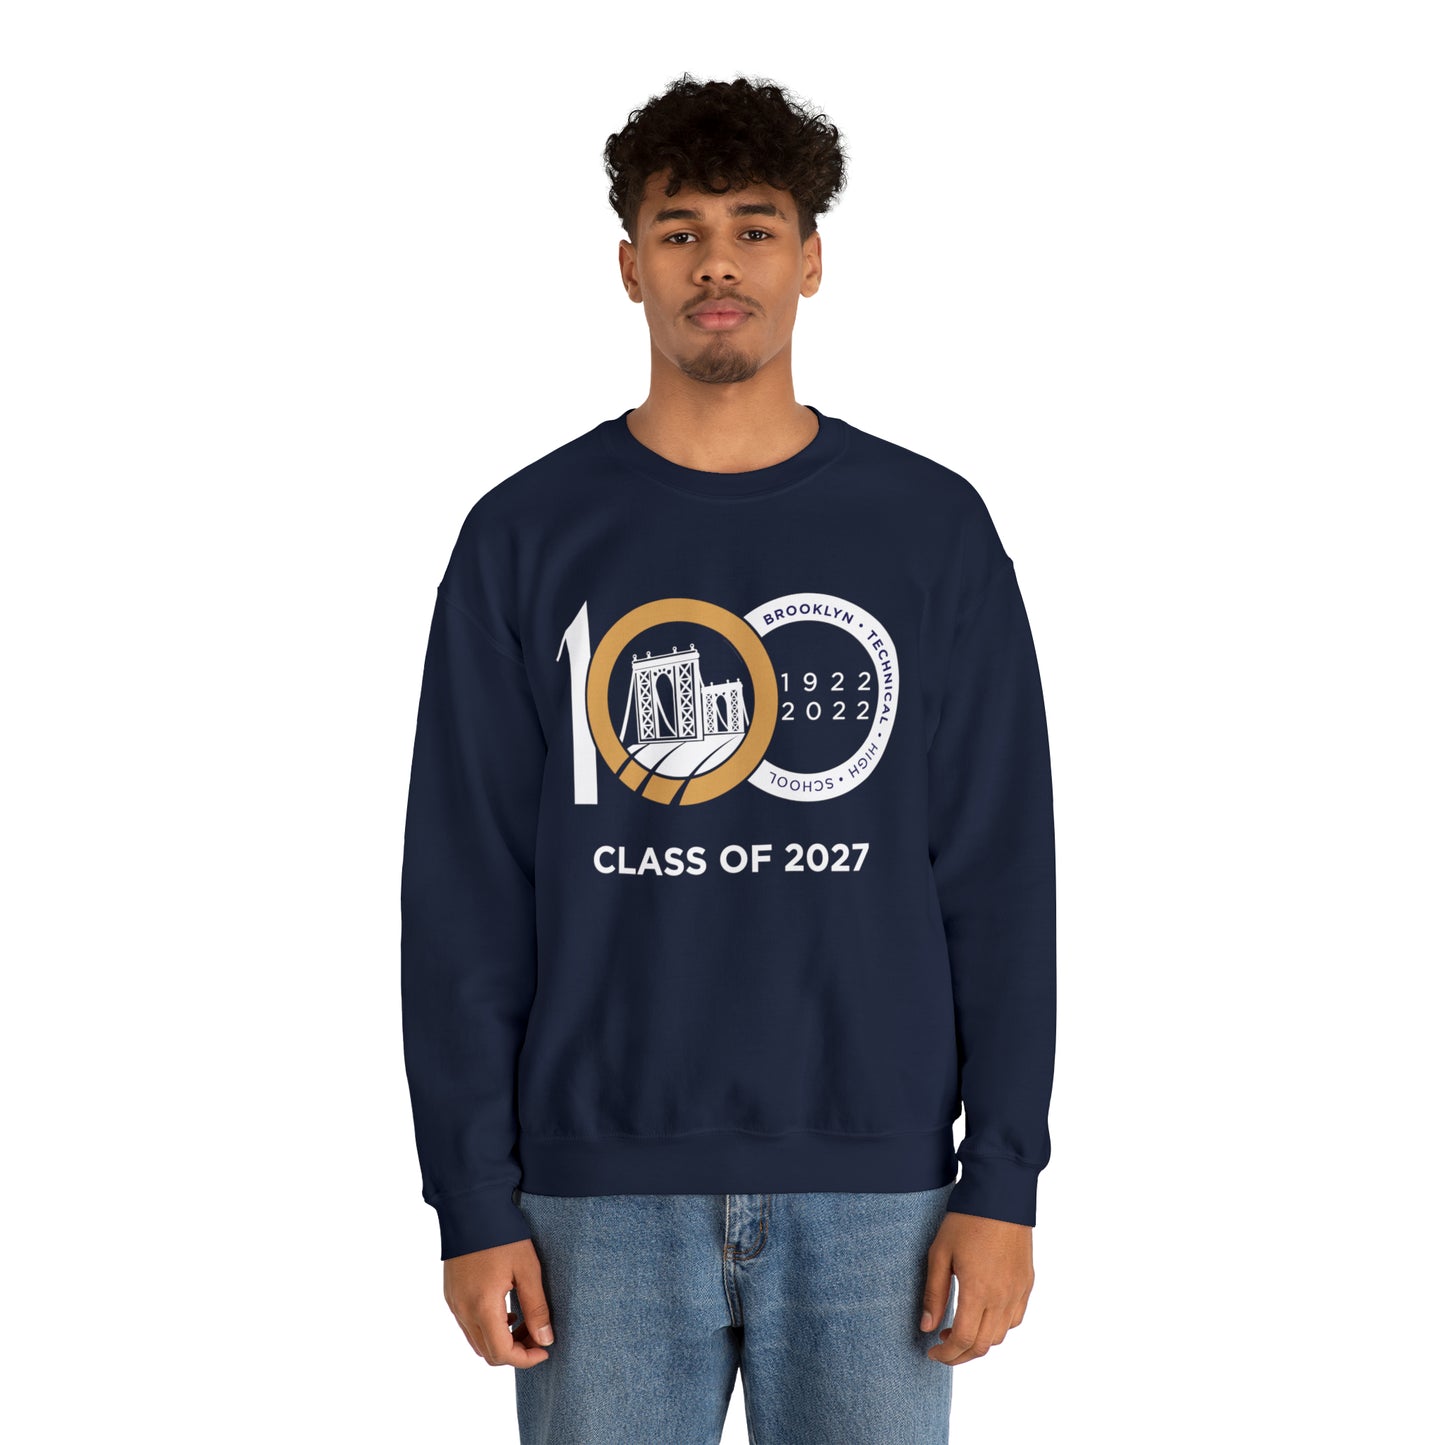 Centennial - Men's Heavy Blend Crewneck Sweatshirt - Class Of 2027